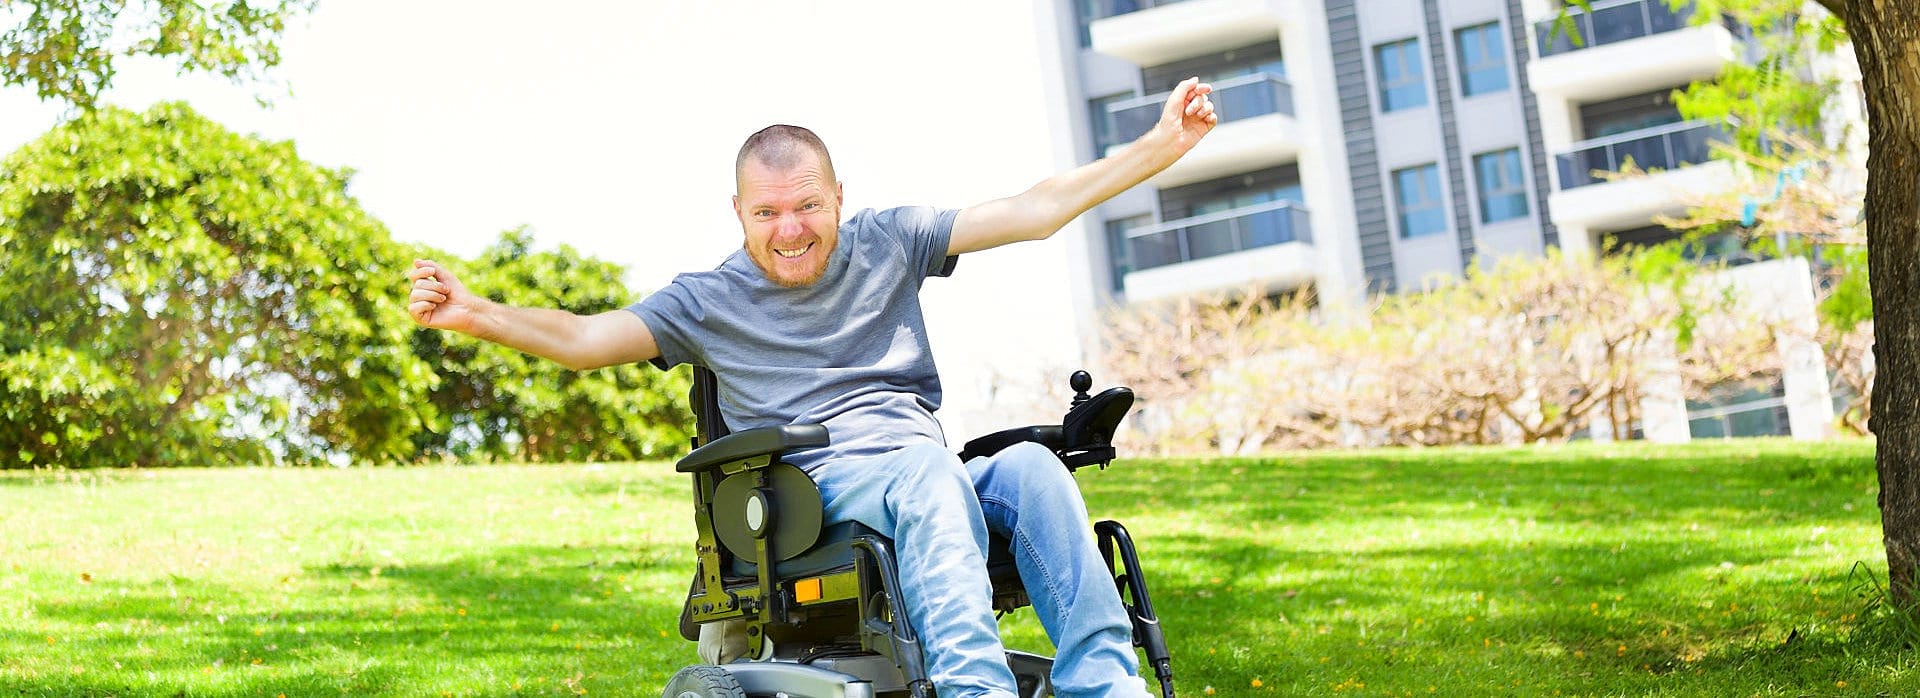 cheerful man at the wheelchair